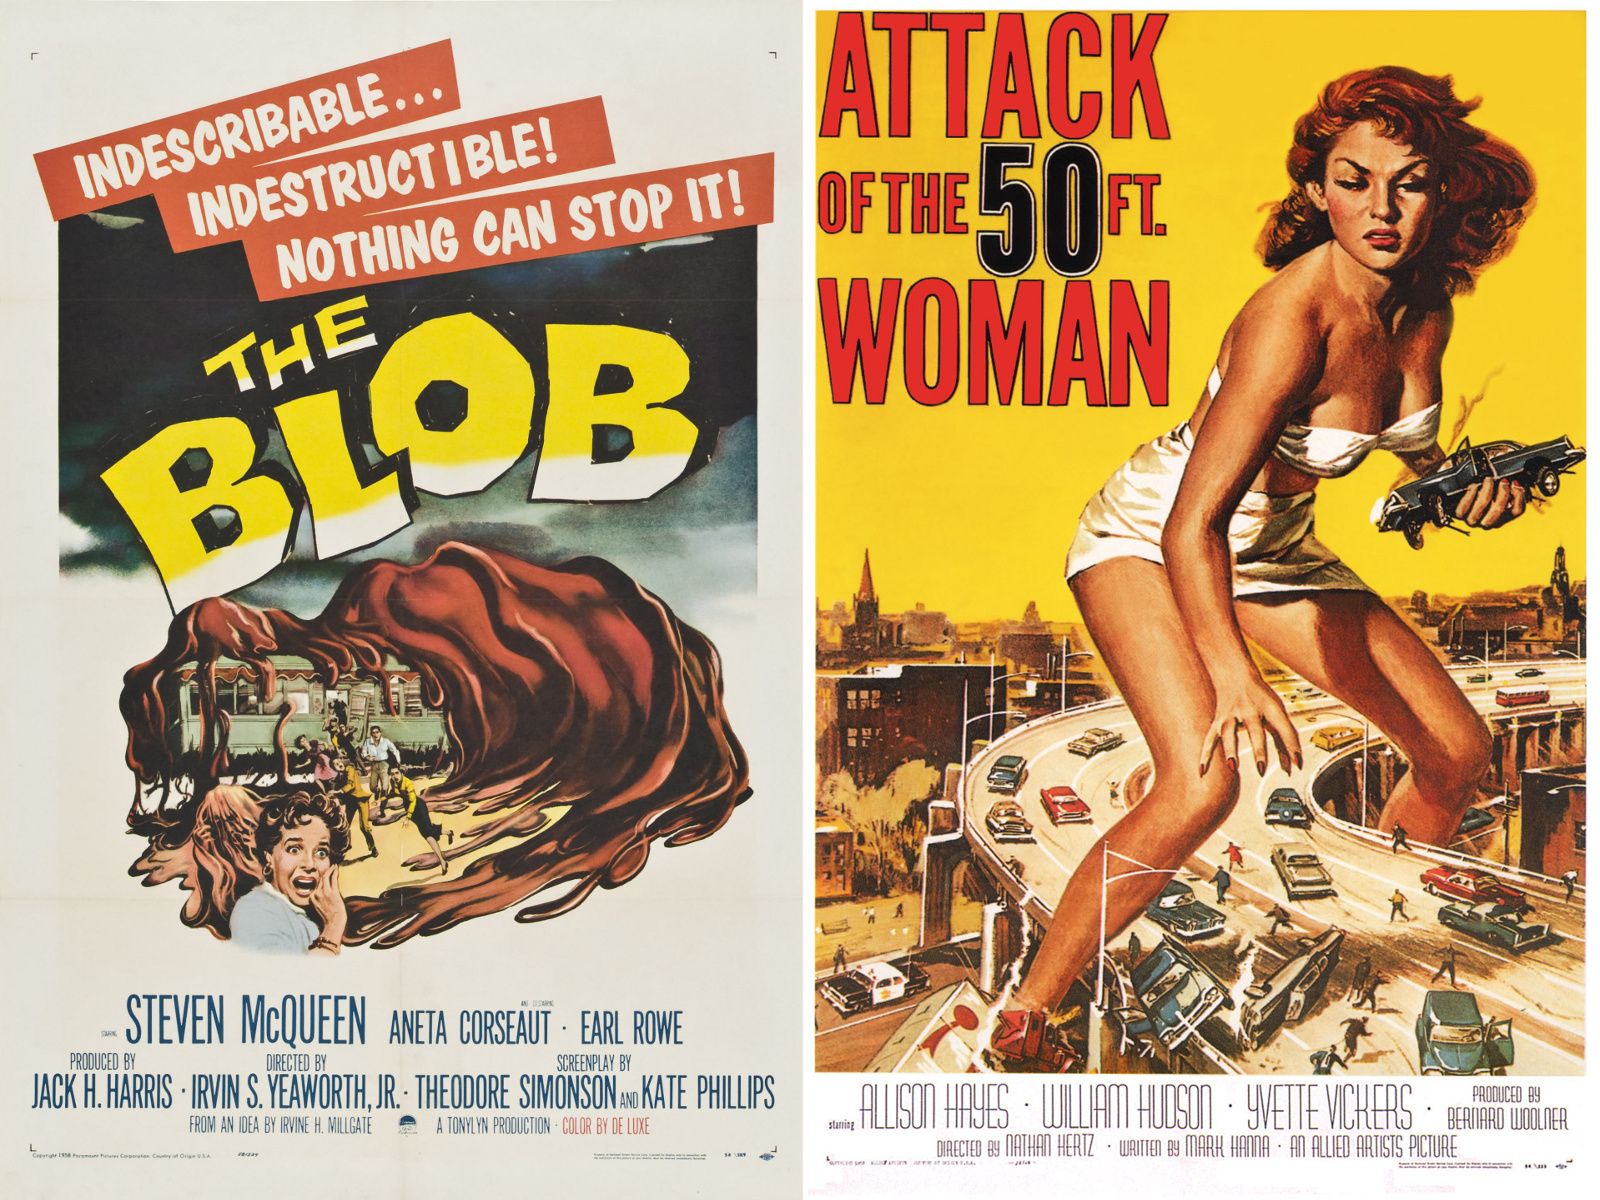 Нападение 50. Постер Attack.of.the.50.foot.woman.1958. Атака 50-футовой женщины плакат. Постер футовая женщина.